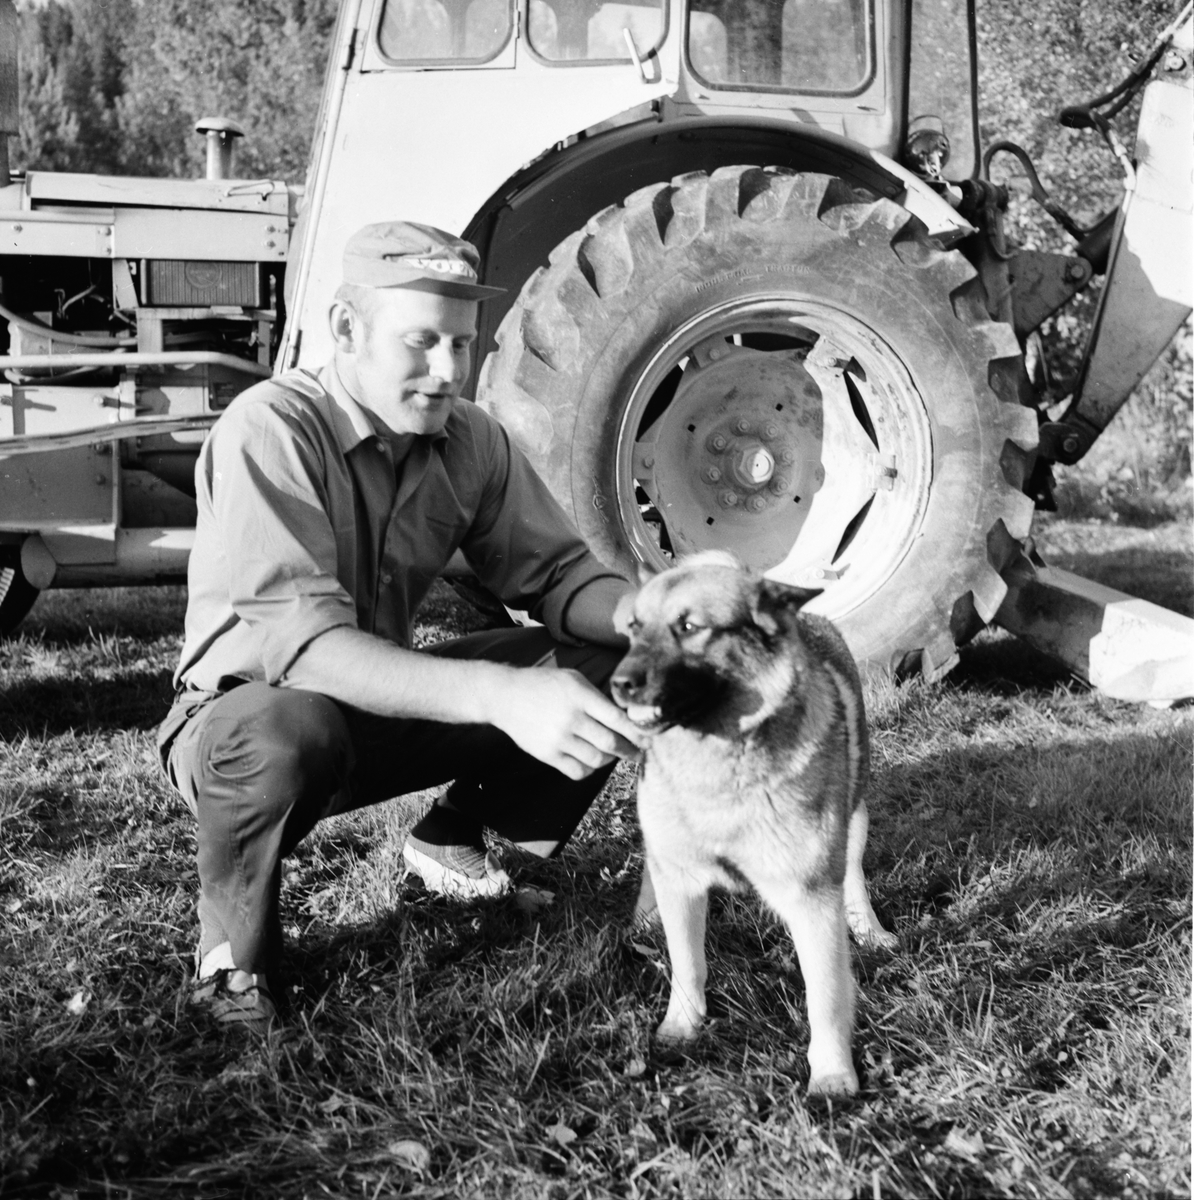 Iste. Vattenfrågan löses.
September 1972
Sölve Jonsson från Flästa med en gråhund/jakthund.